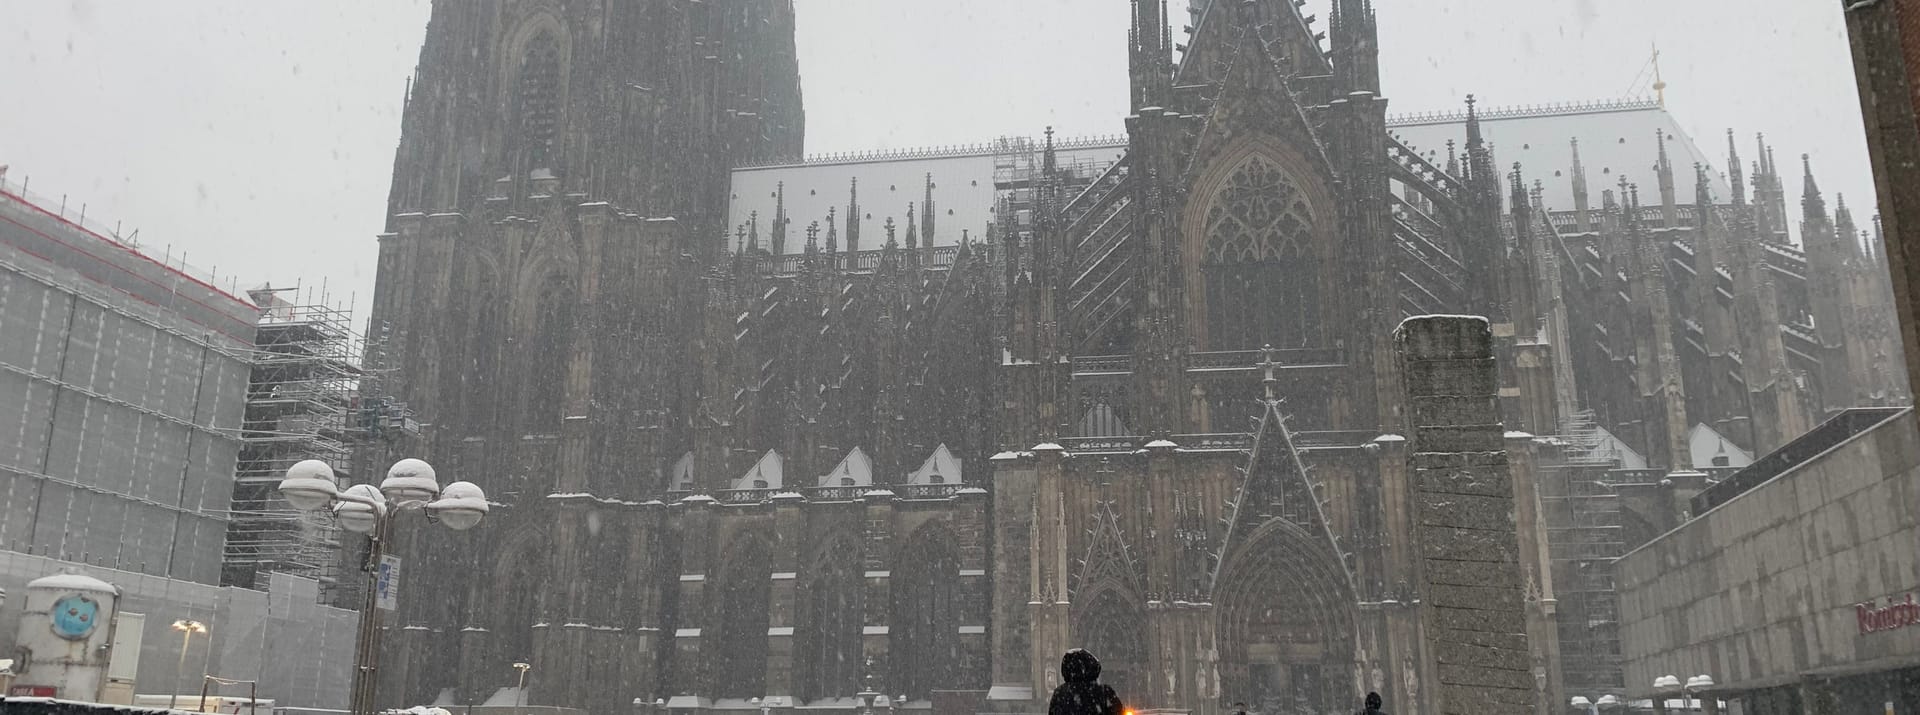 Auch der Kölner Dom ist vom Schneegestörber nicht verschont geblieben.